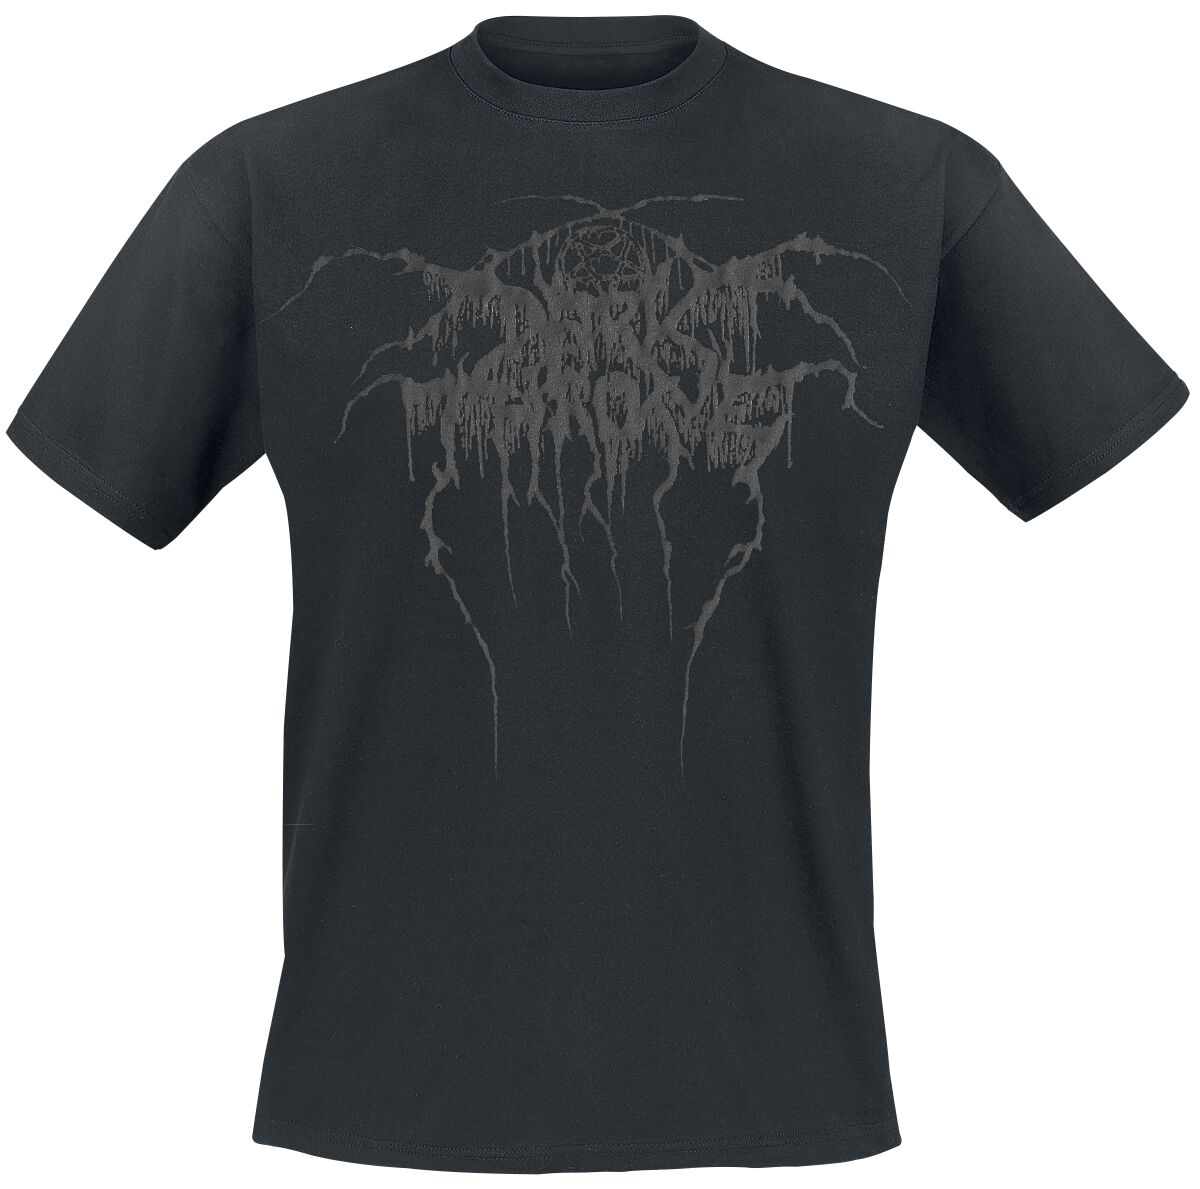 Darkthrone T-Shirt - True Norwegian Black Metal - S bis XXL - für Männer - Größe L - schwarz  - Lizenziertes Merchandise!